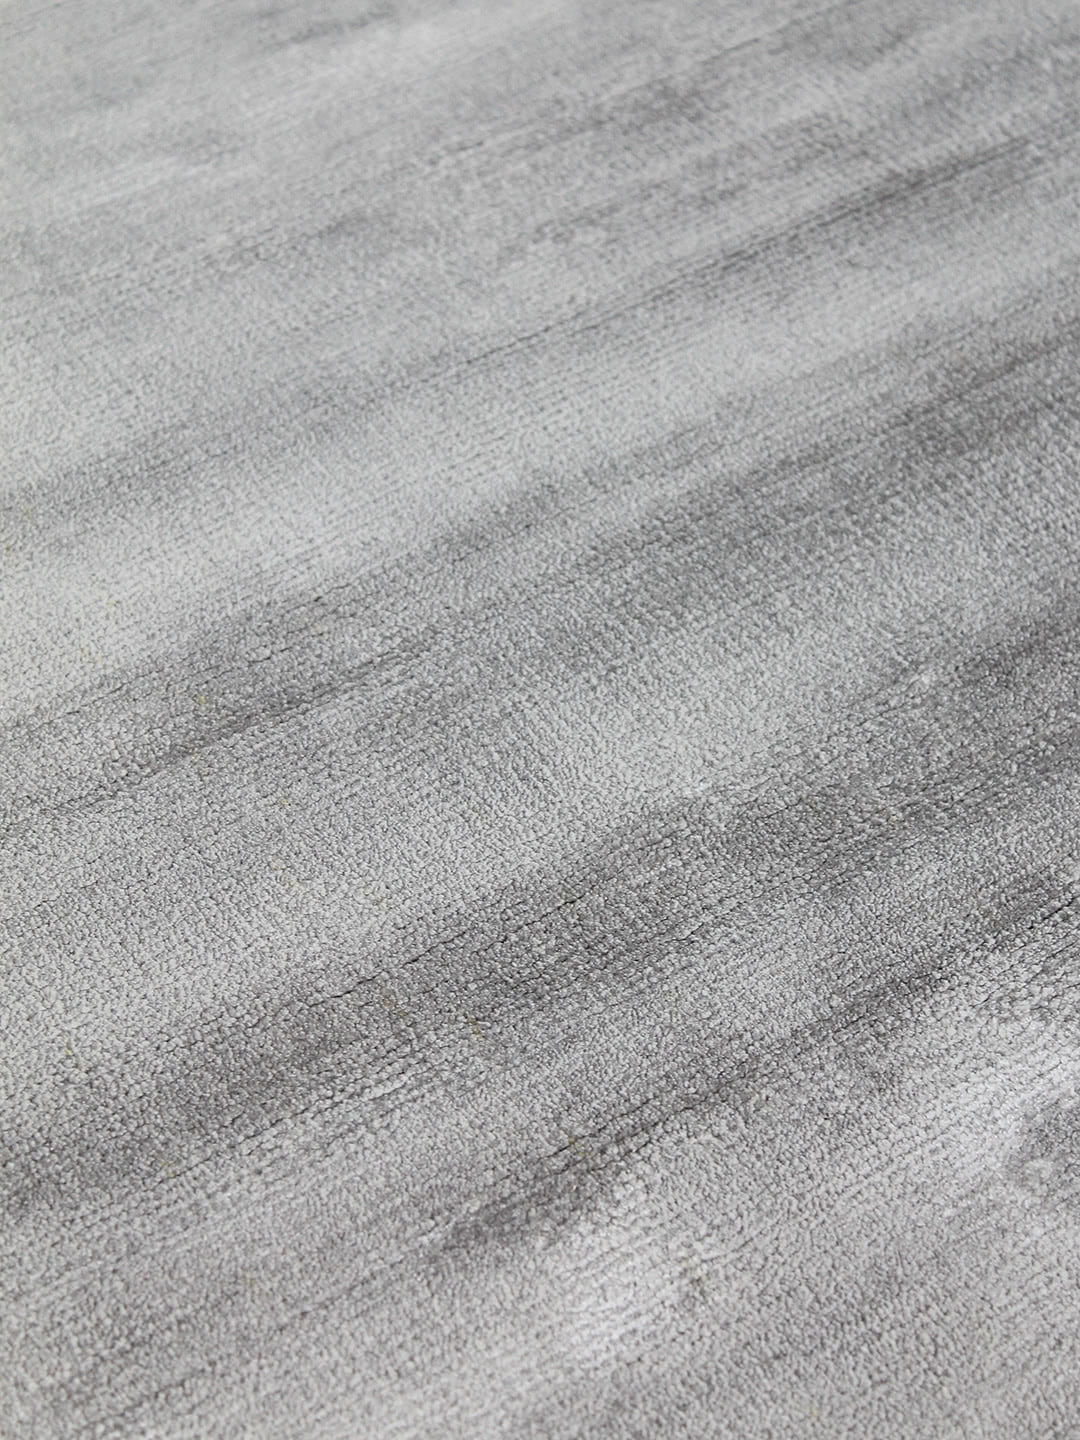 Glitz Silver luxury artsilk rug - detail image